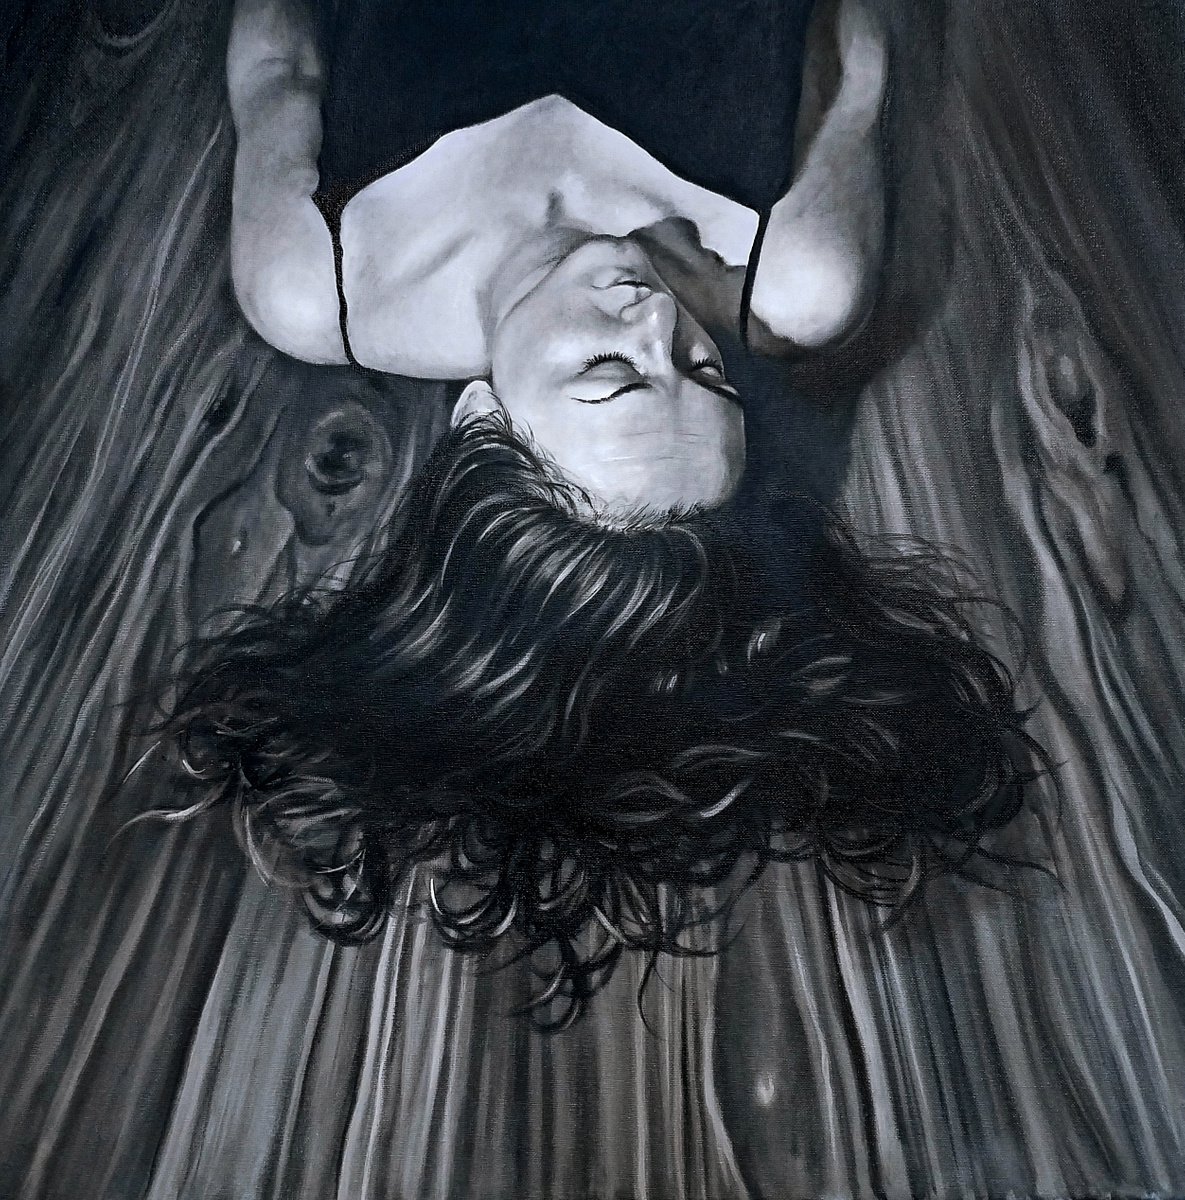 Sleeping by Judy Pilarczyk